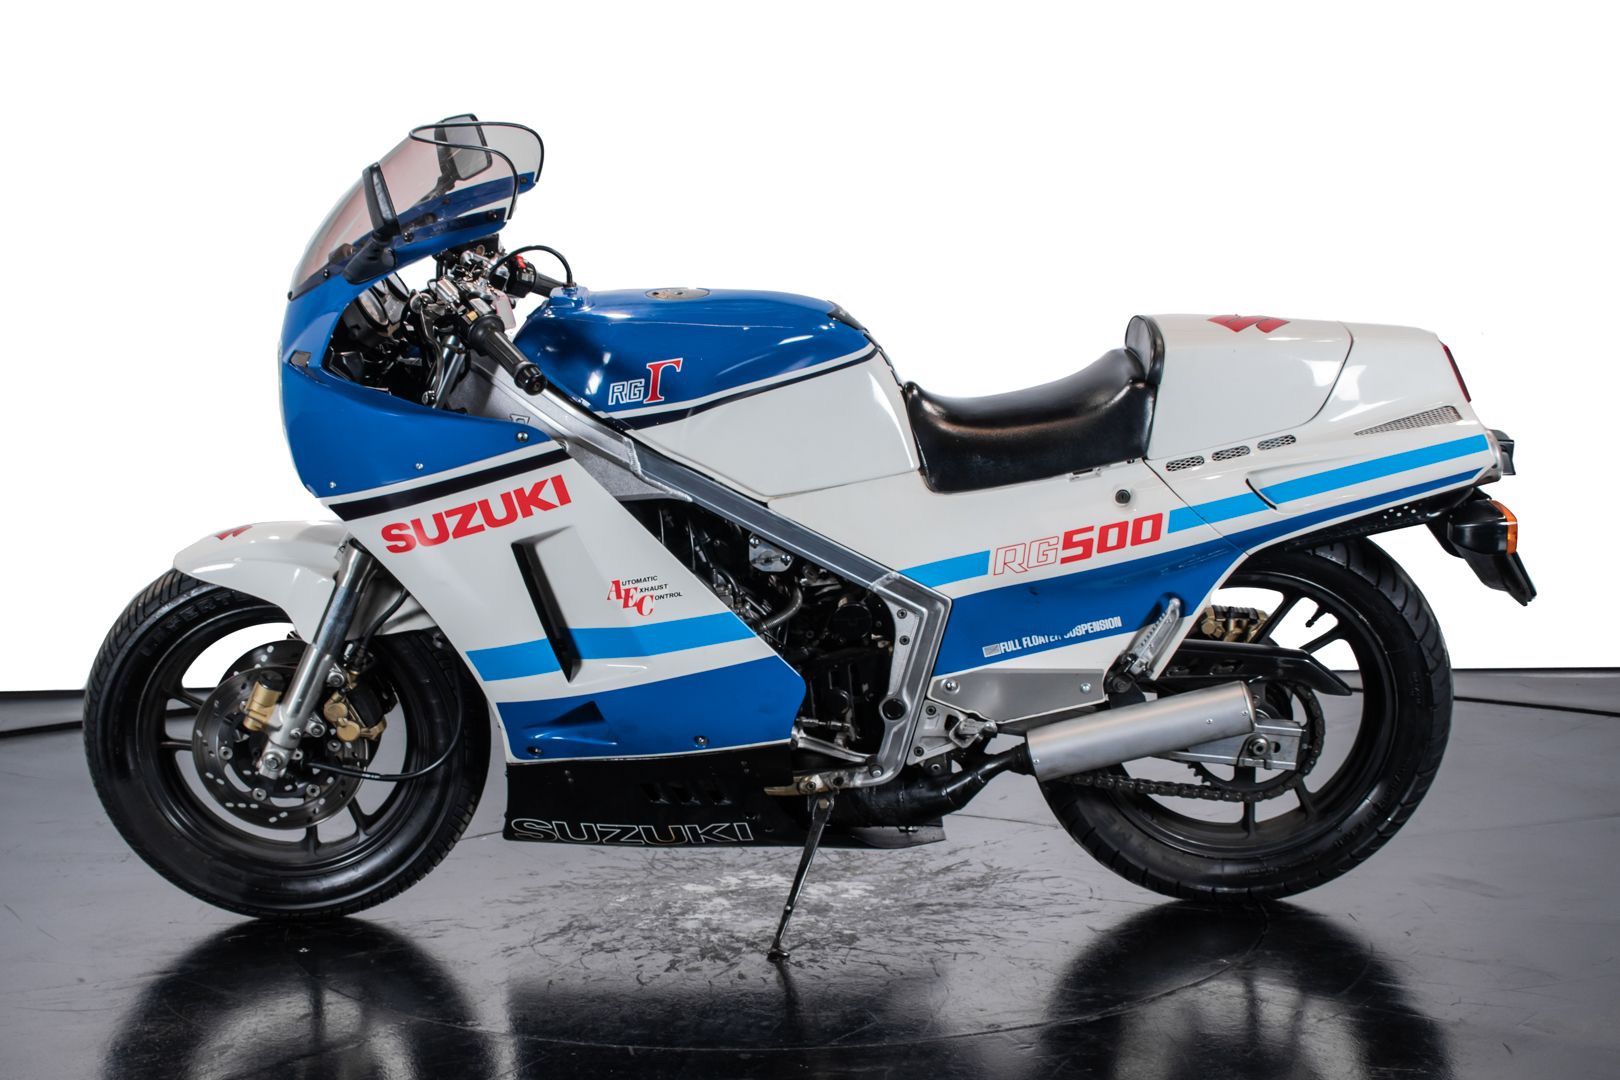 a 1985 Suzuki RG500 motorcycle